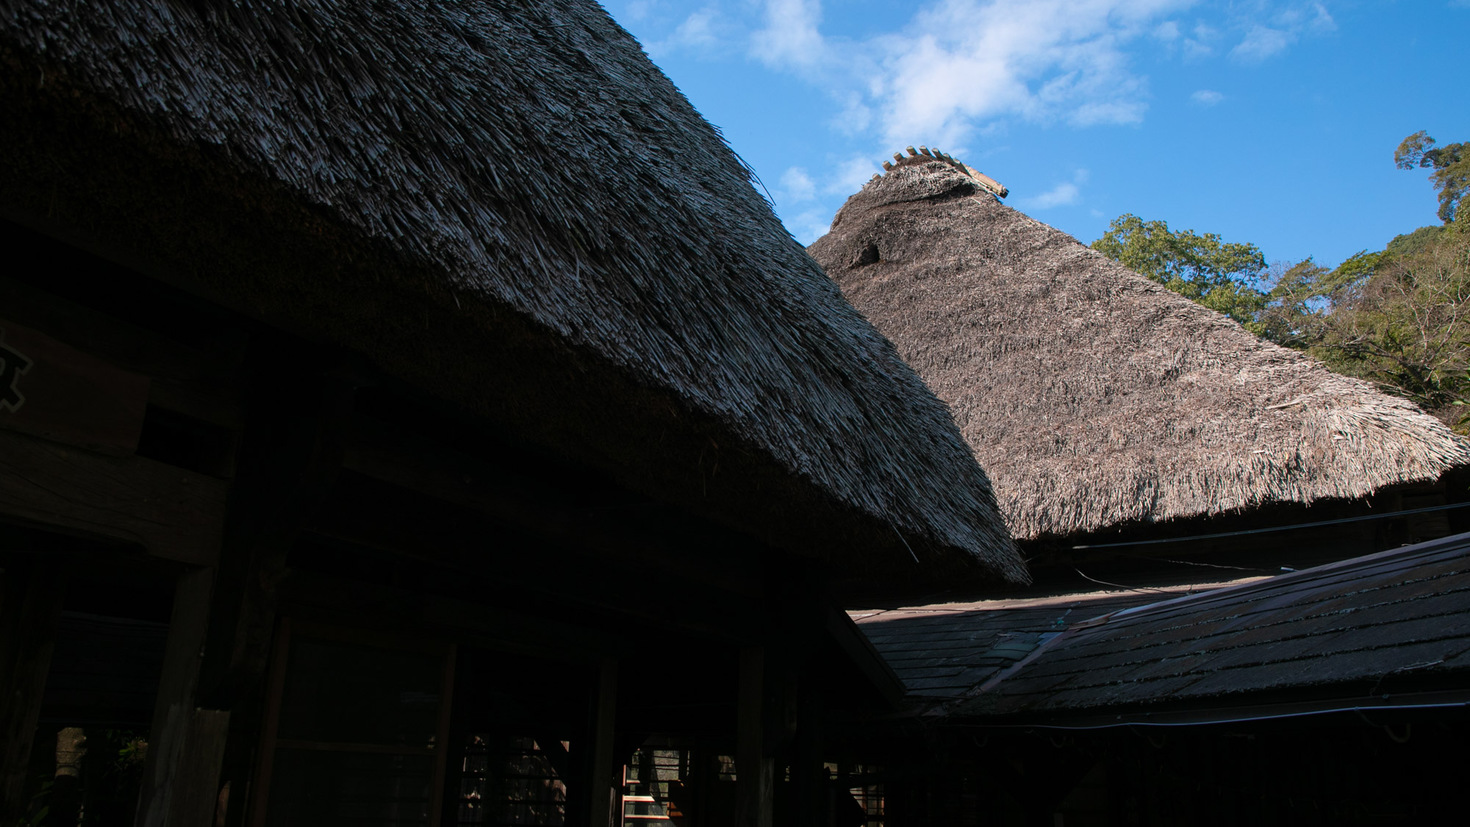 【式部亭】式部亭では本物のかやぶき屋根を使用しています。